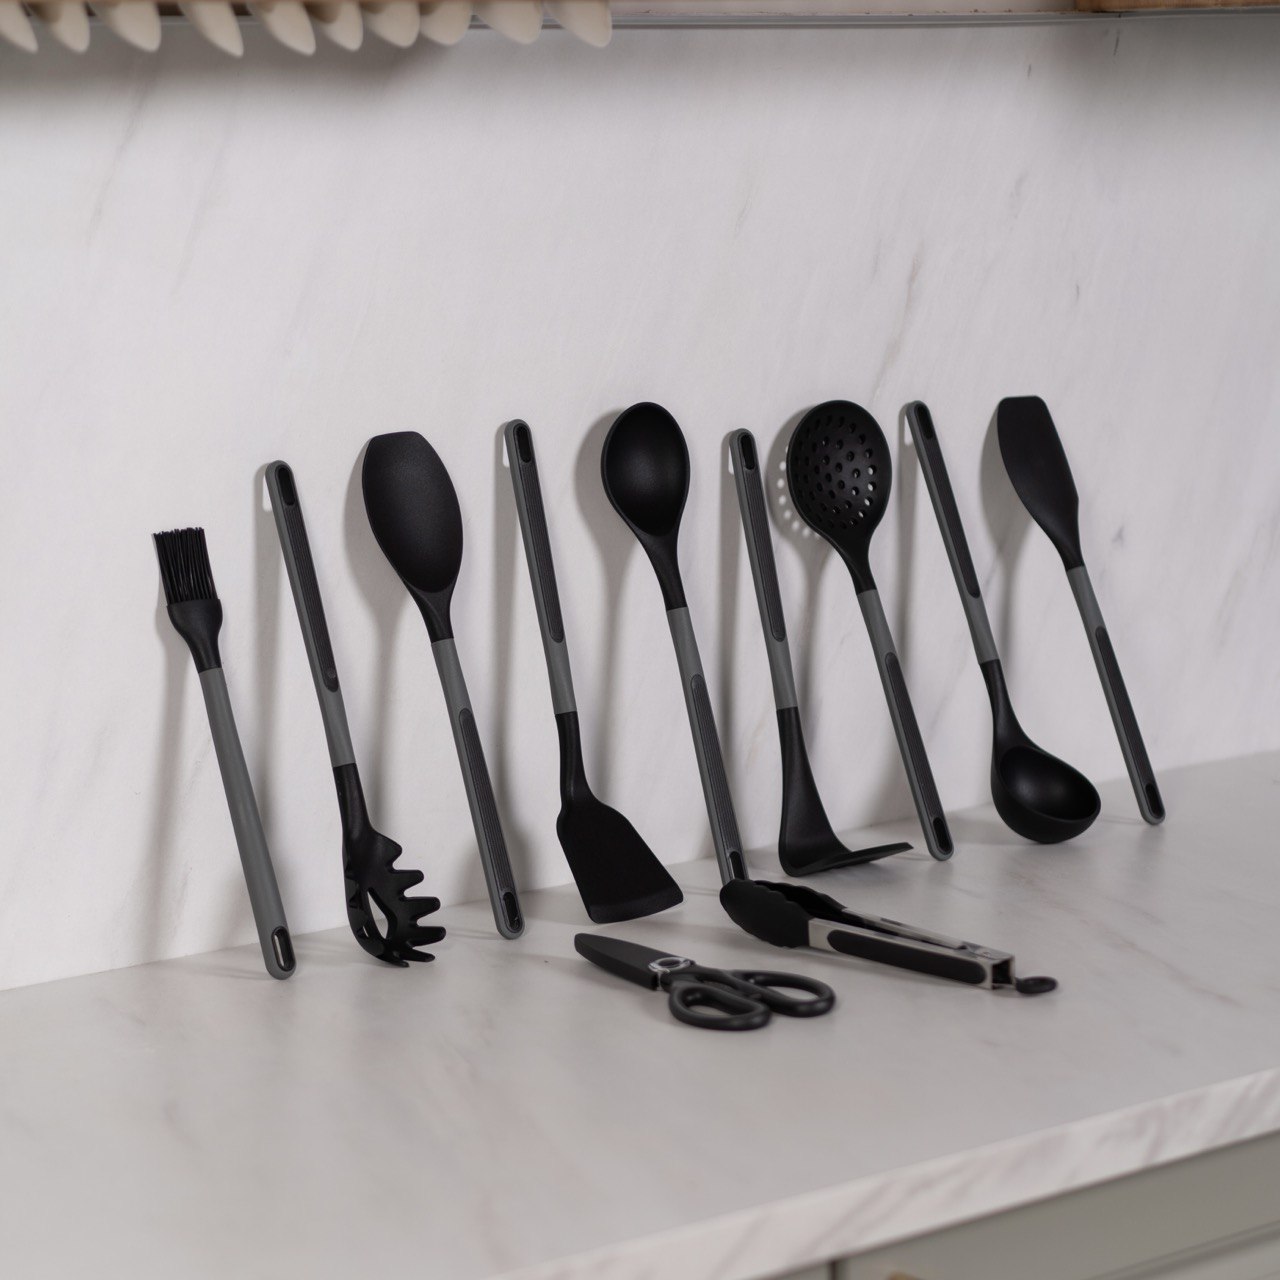 Набор кухонных принадлежностей HILZZ 13 предметов черный - фото 9